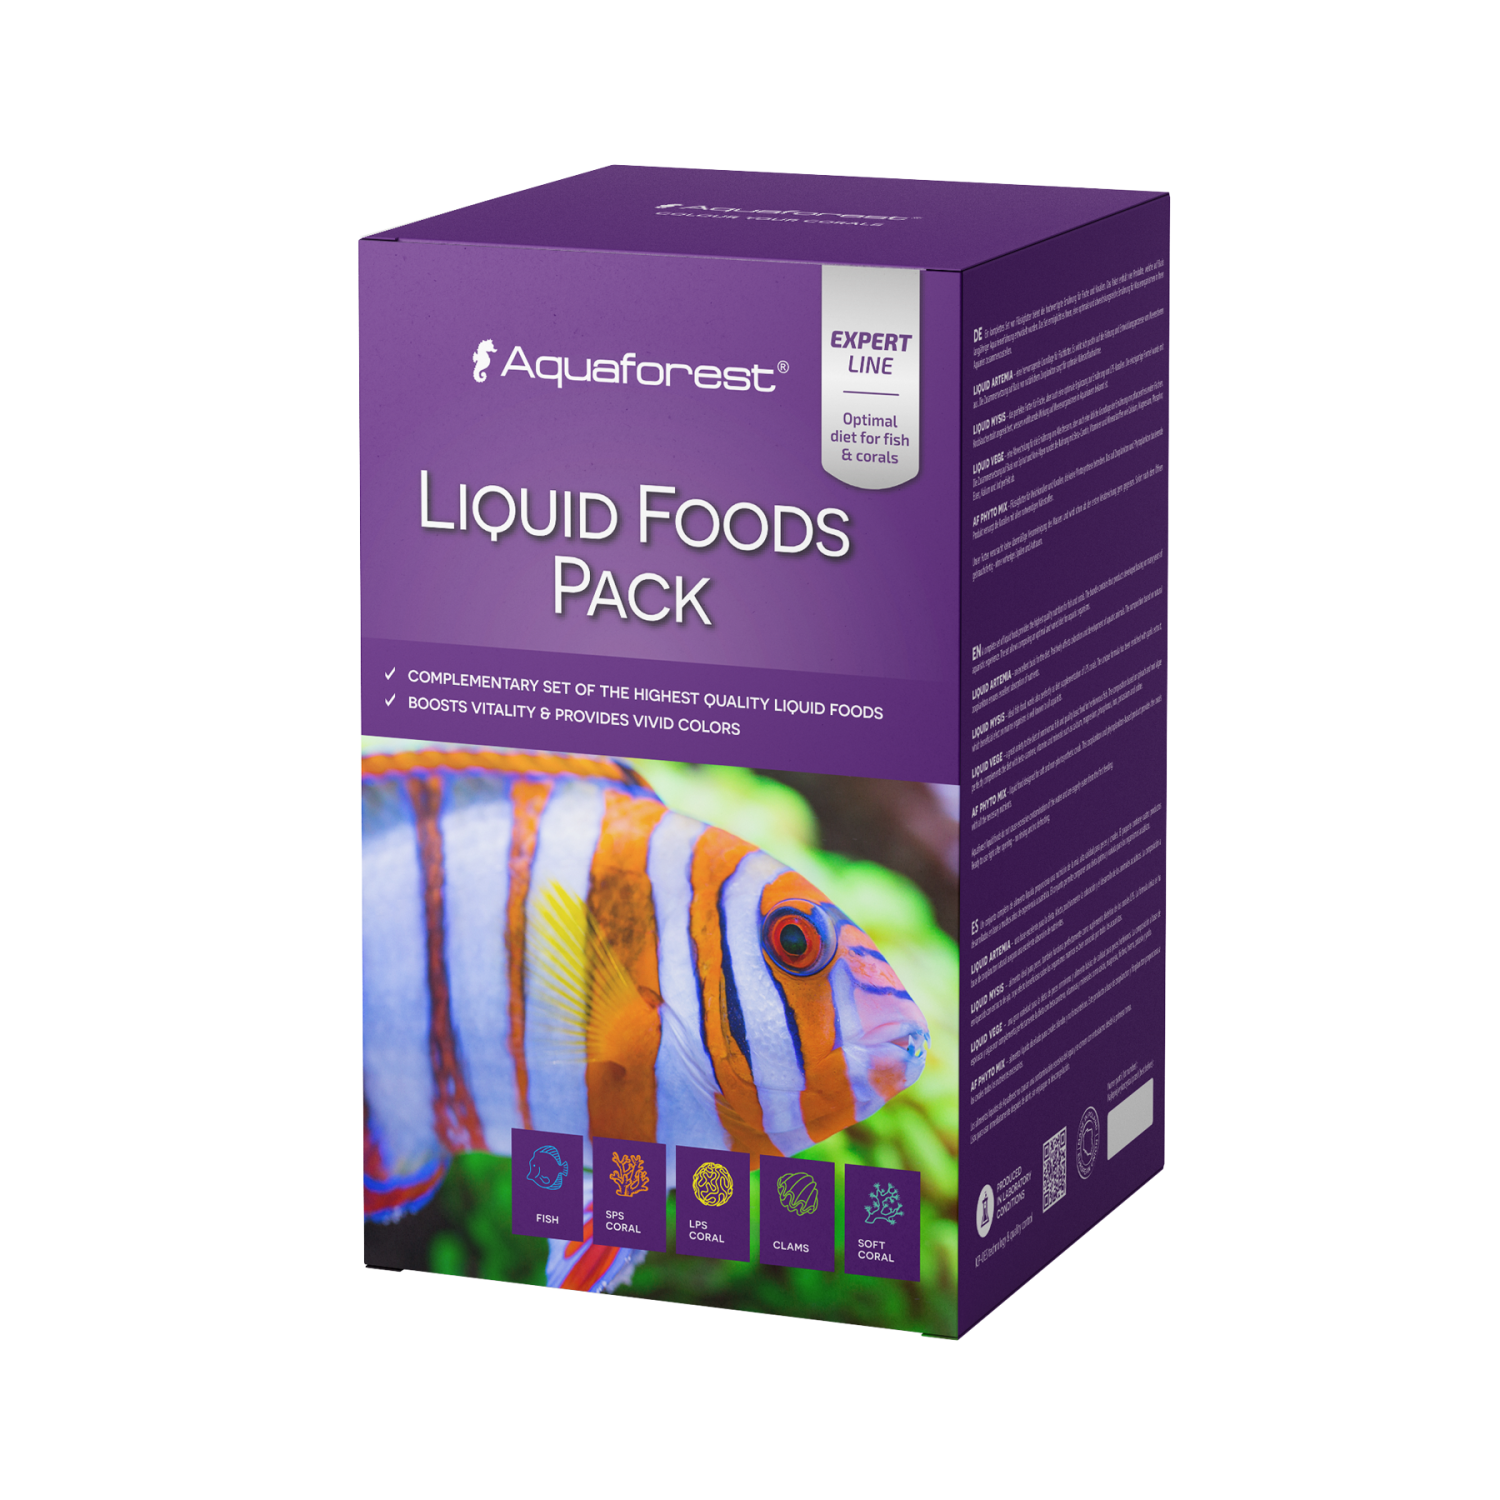 AF Liquid Foods Pack